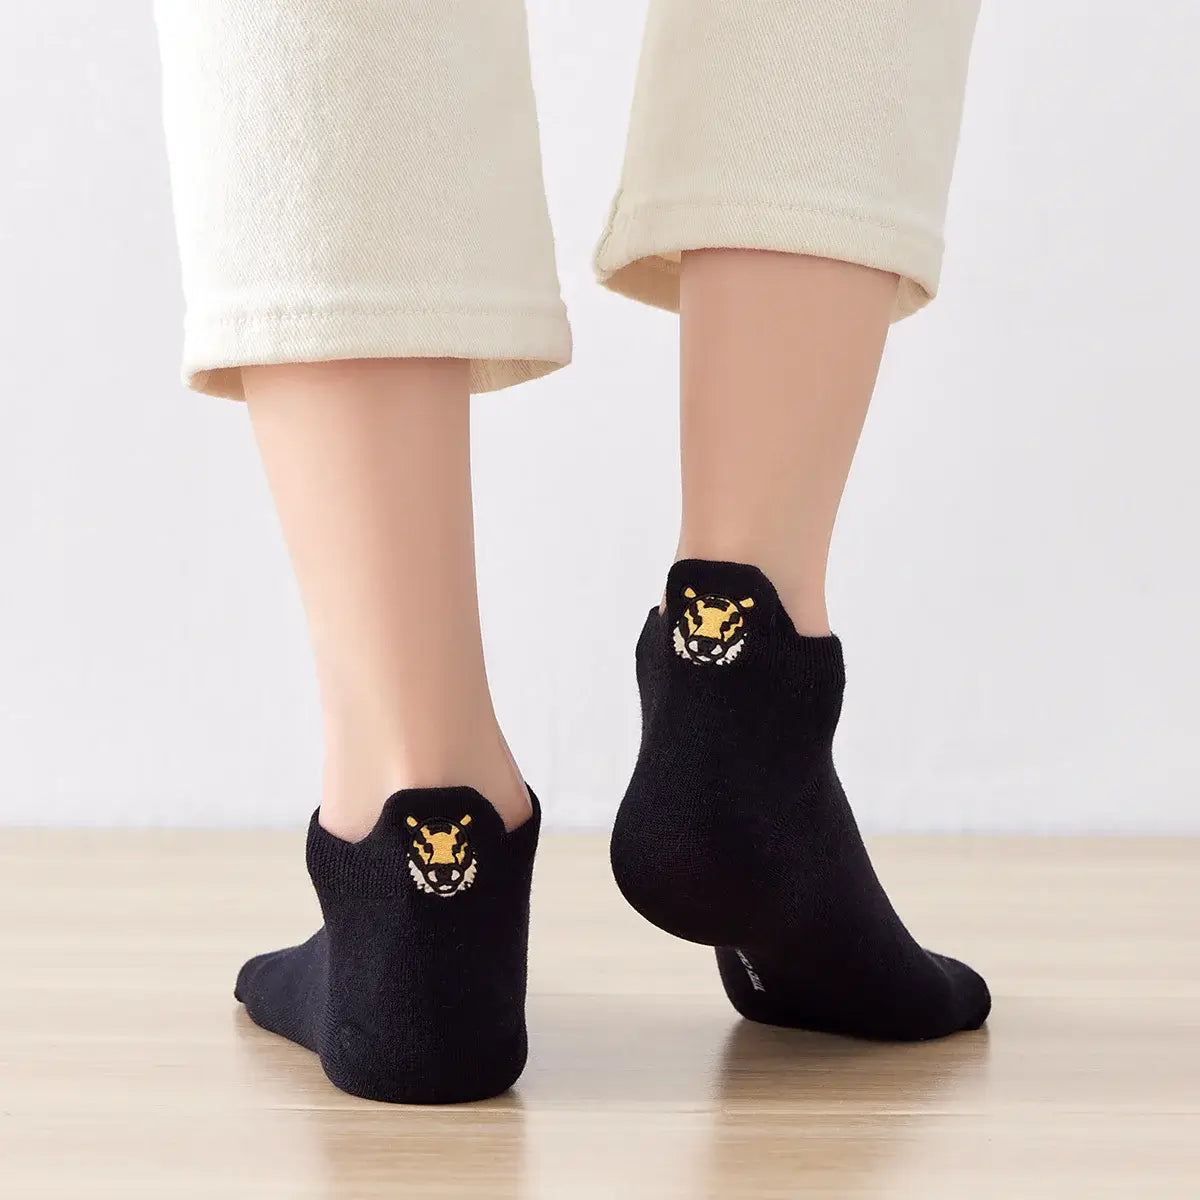 Chaussettes noir en coton à languette safari à motif animaux pour femme | Chaussettes douces et respirantes | Un cadeau parfait pour les femmes de tous âges | Disponibles à un prix abordable.